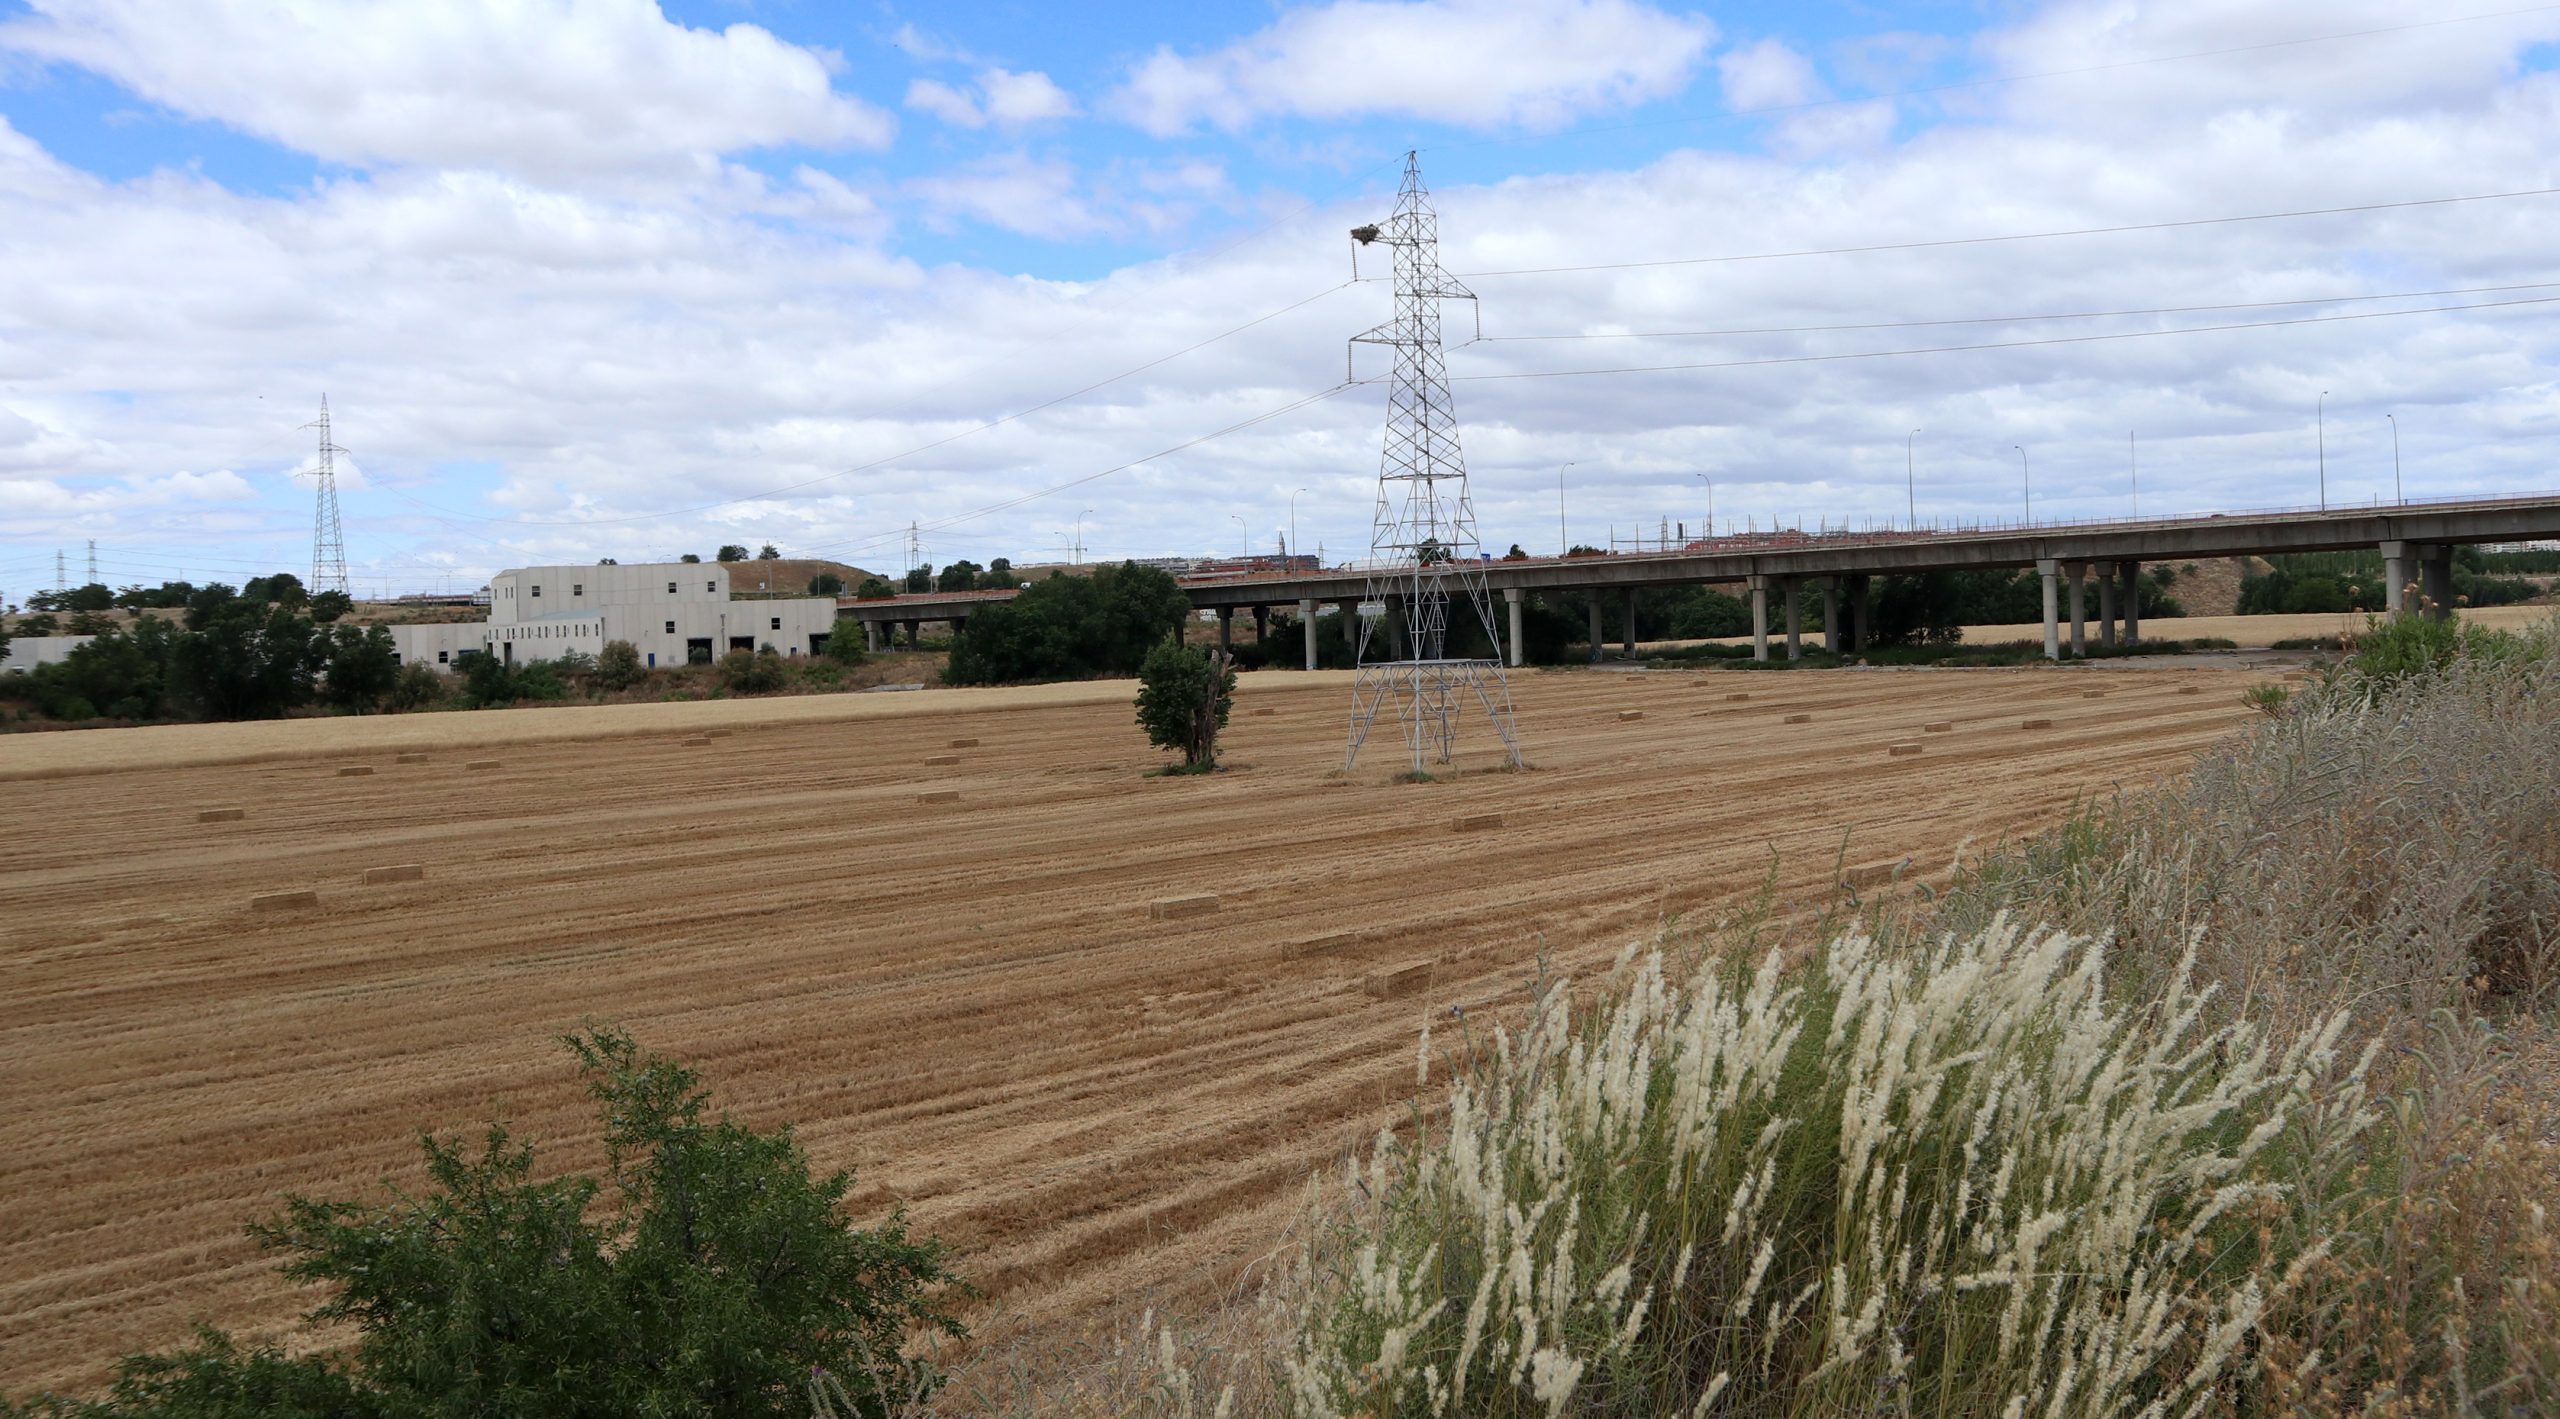 Cuña agrícola en el sureste de Madrid, parque lineal del Manzanares. Junio de 2020. Morán, Nerea.